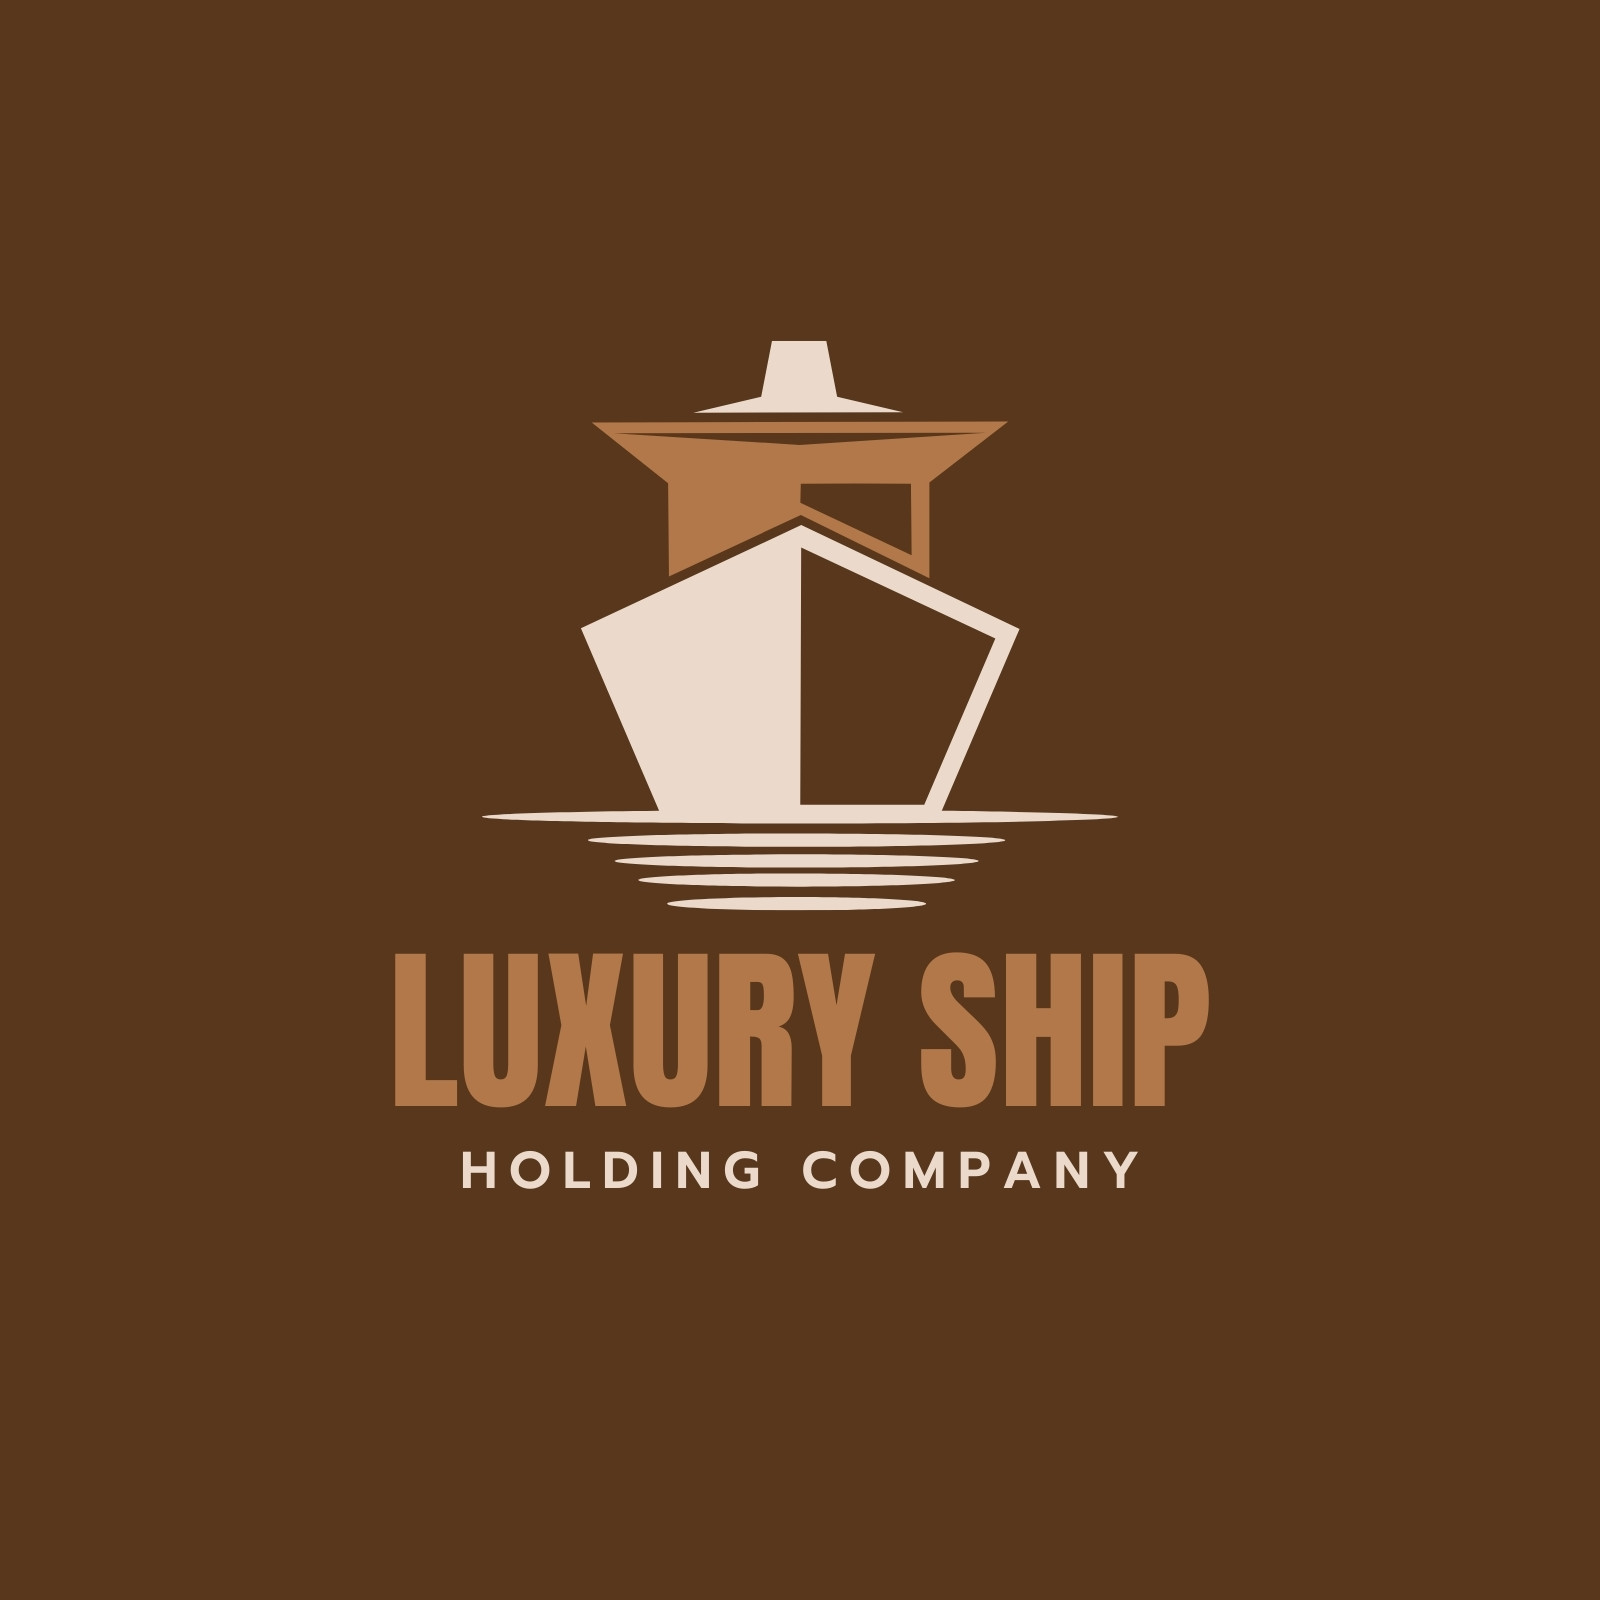 Cargo Ship Logo Design Template Cargo Stock Vector (Royalty Free)  1675712920 | Shutterstock